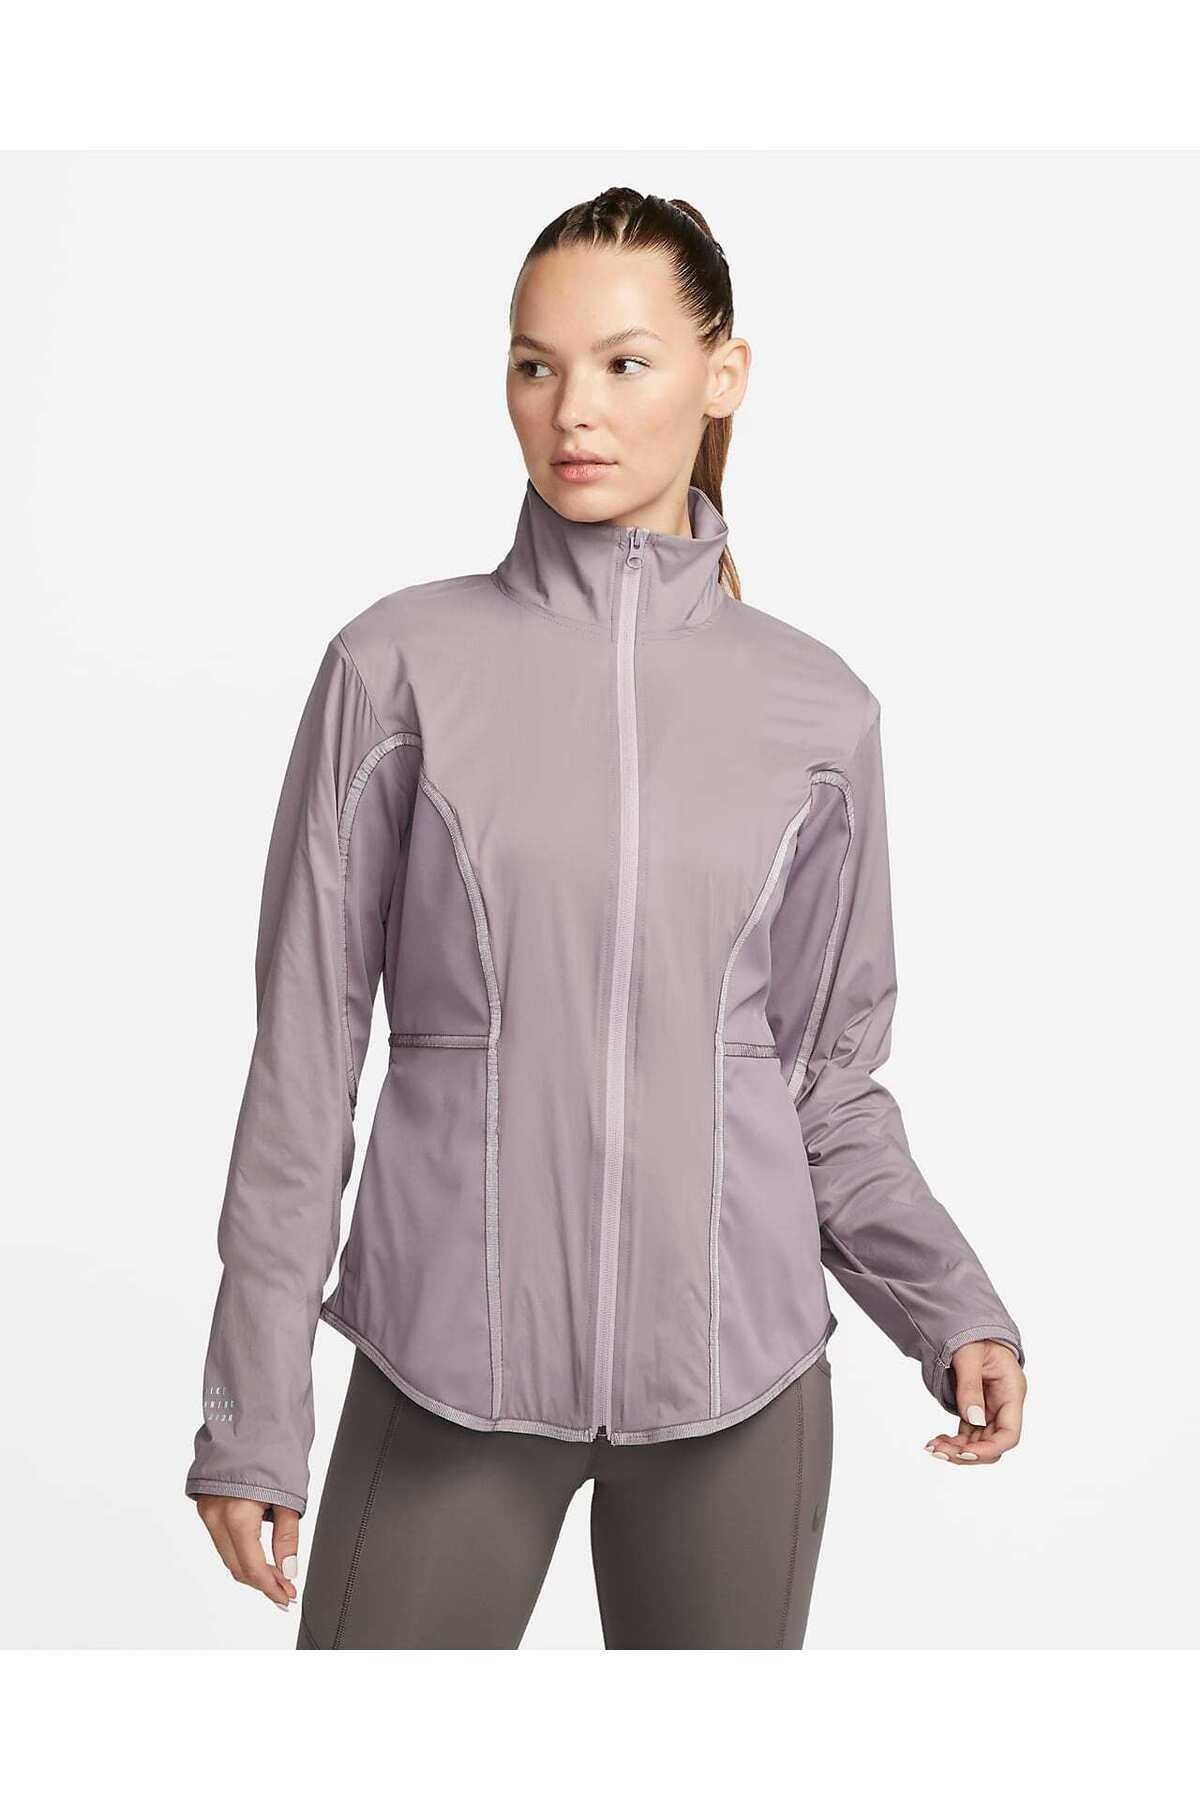 Nike Storm-FIT Koşu Bölümü Kadın Koşu Ceketi DQ6561-531